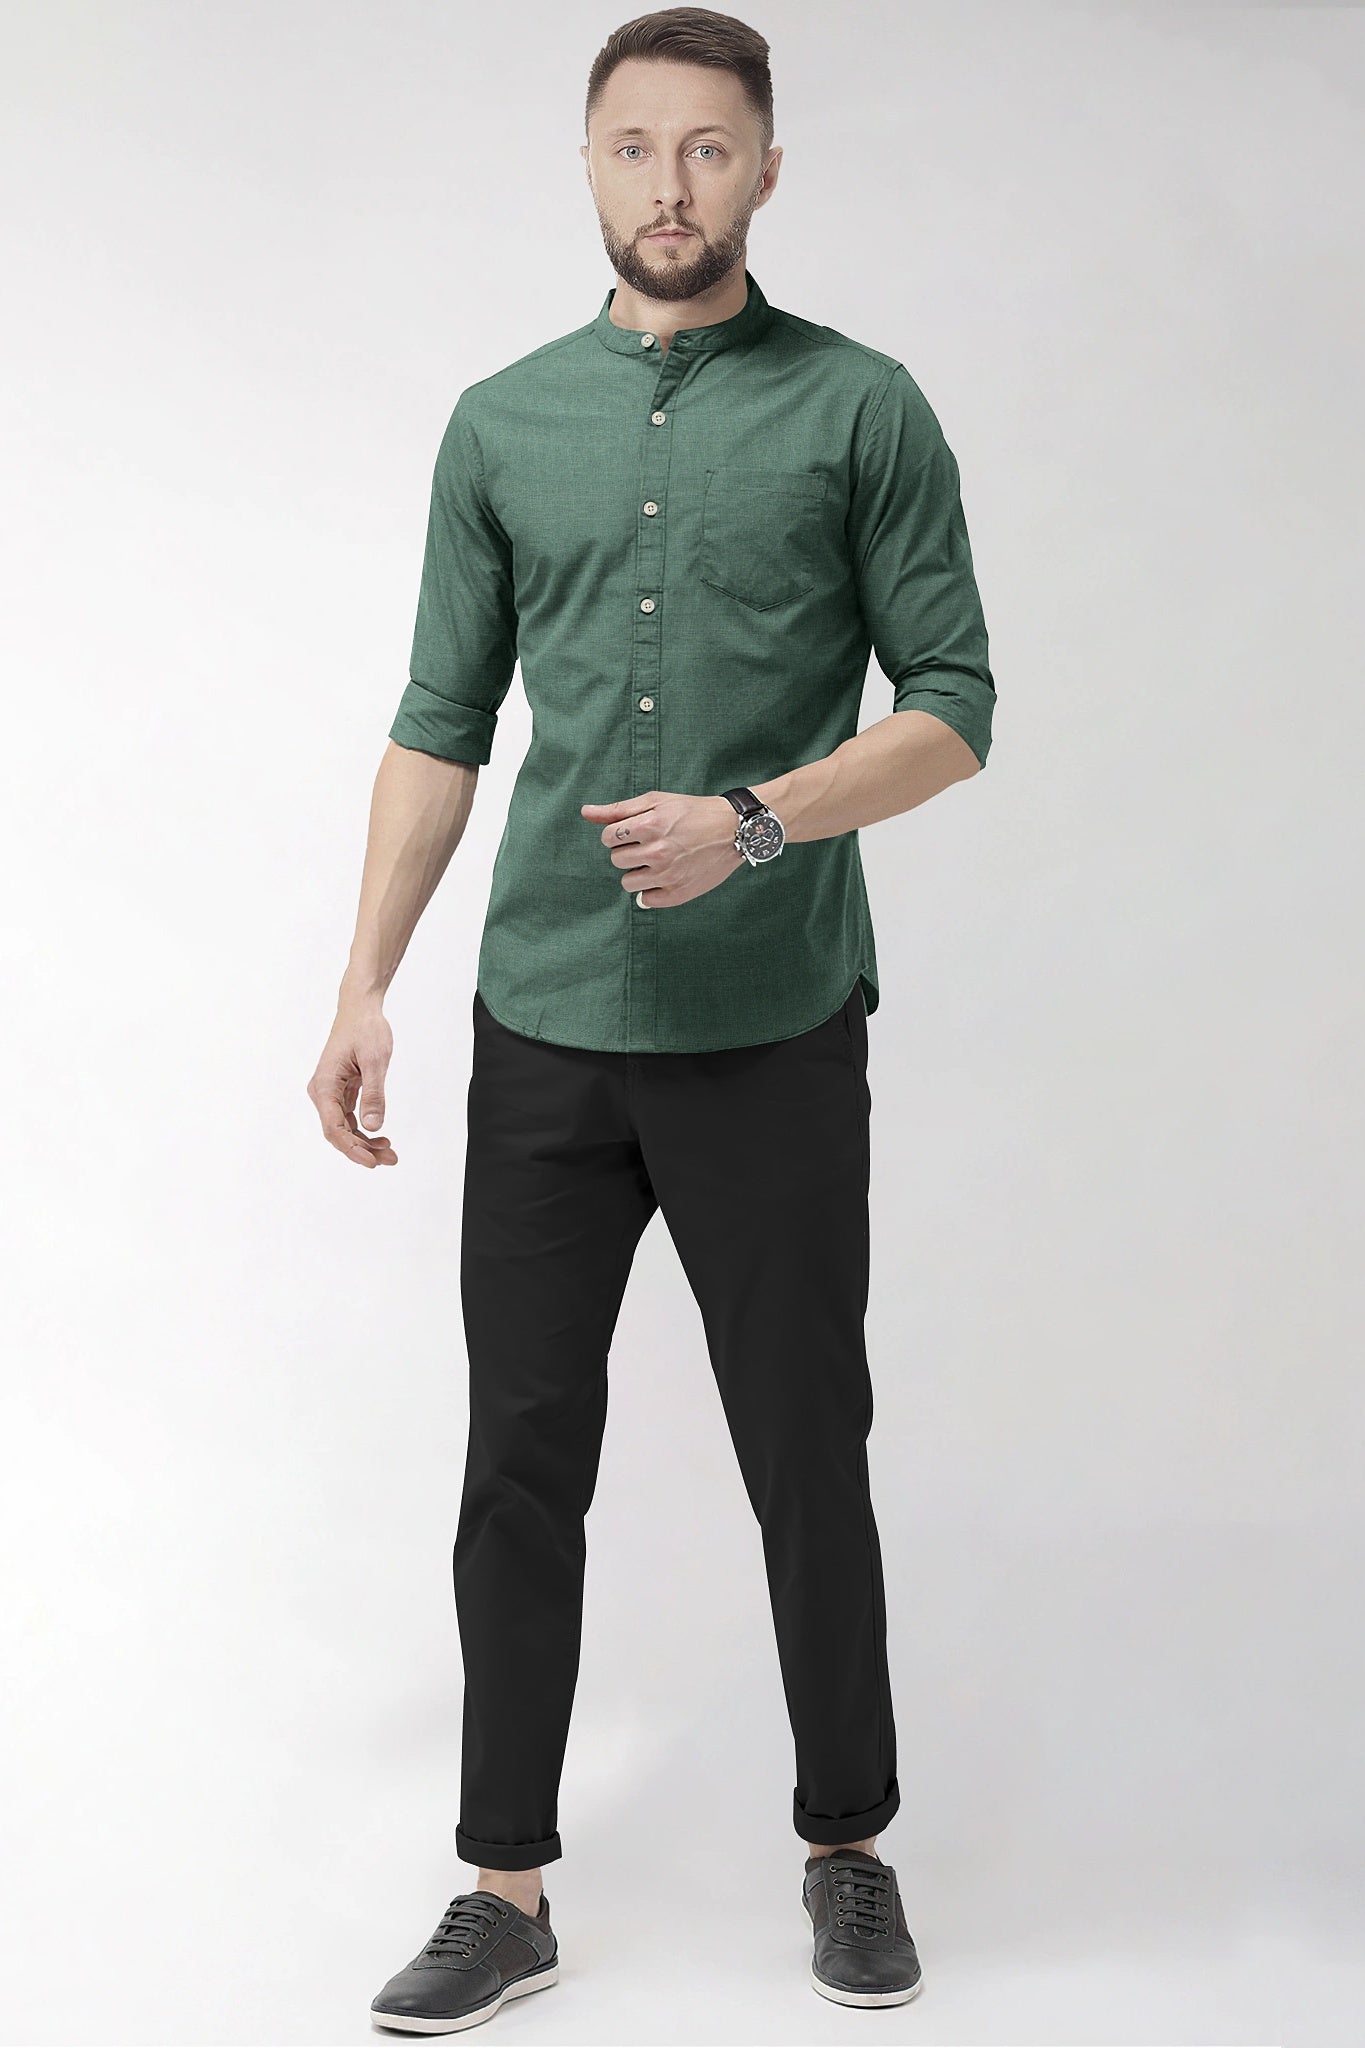 Hunter Green Mandarin Collar Luxurious Linen Shirt